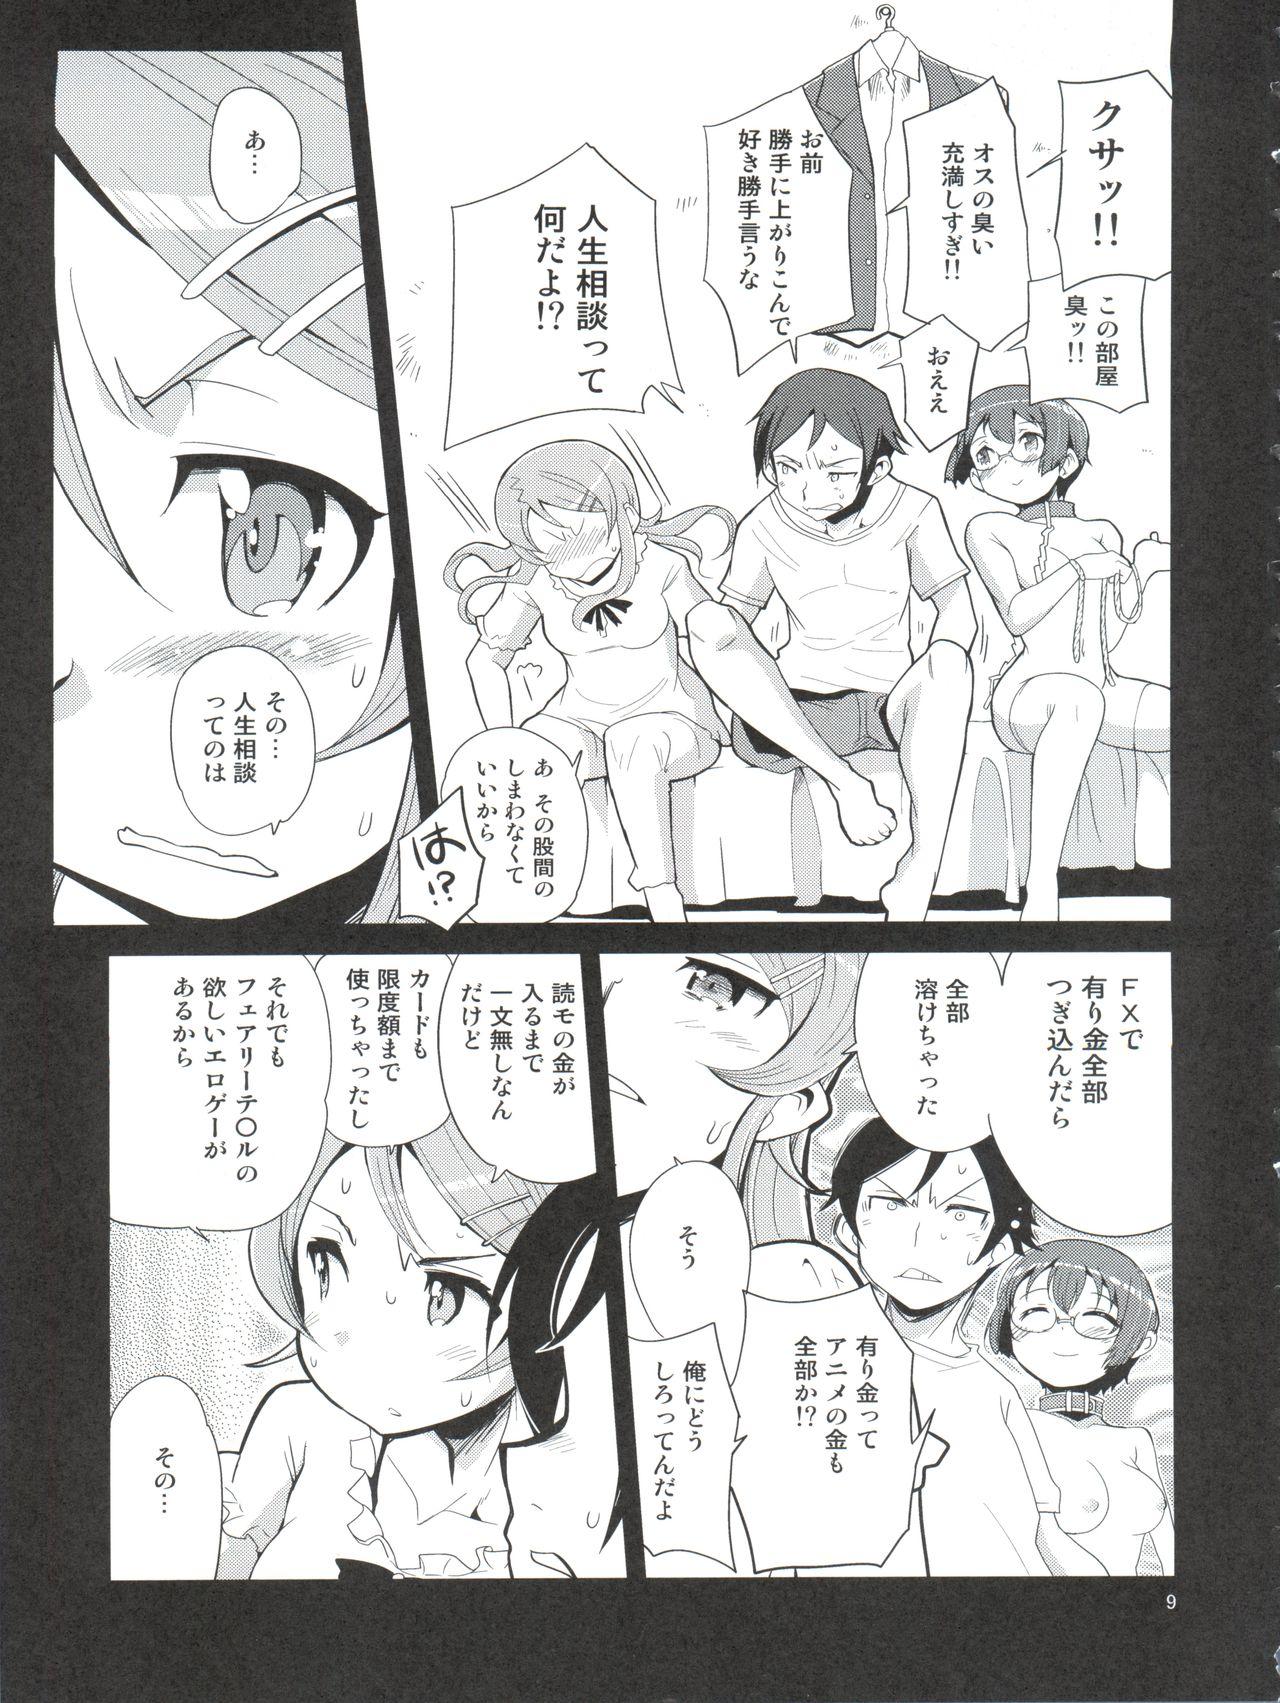 Daring Ore no Imouto no Jinsei ga Kusoge - Ore no imouto ga konna ni kawaii wake ga nai Oral Sex - Page 9